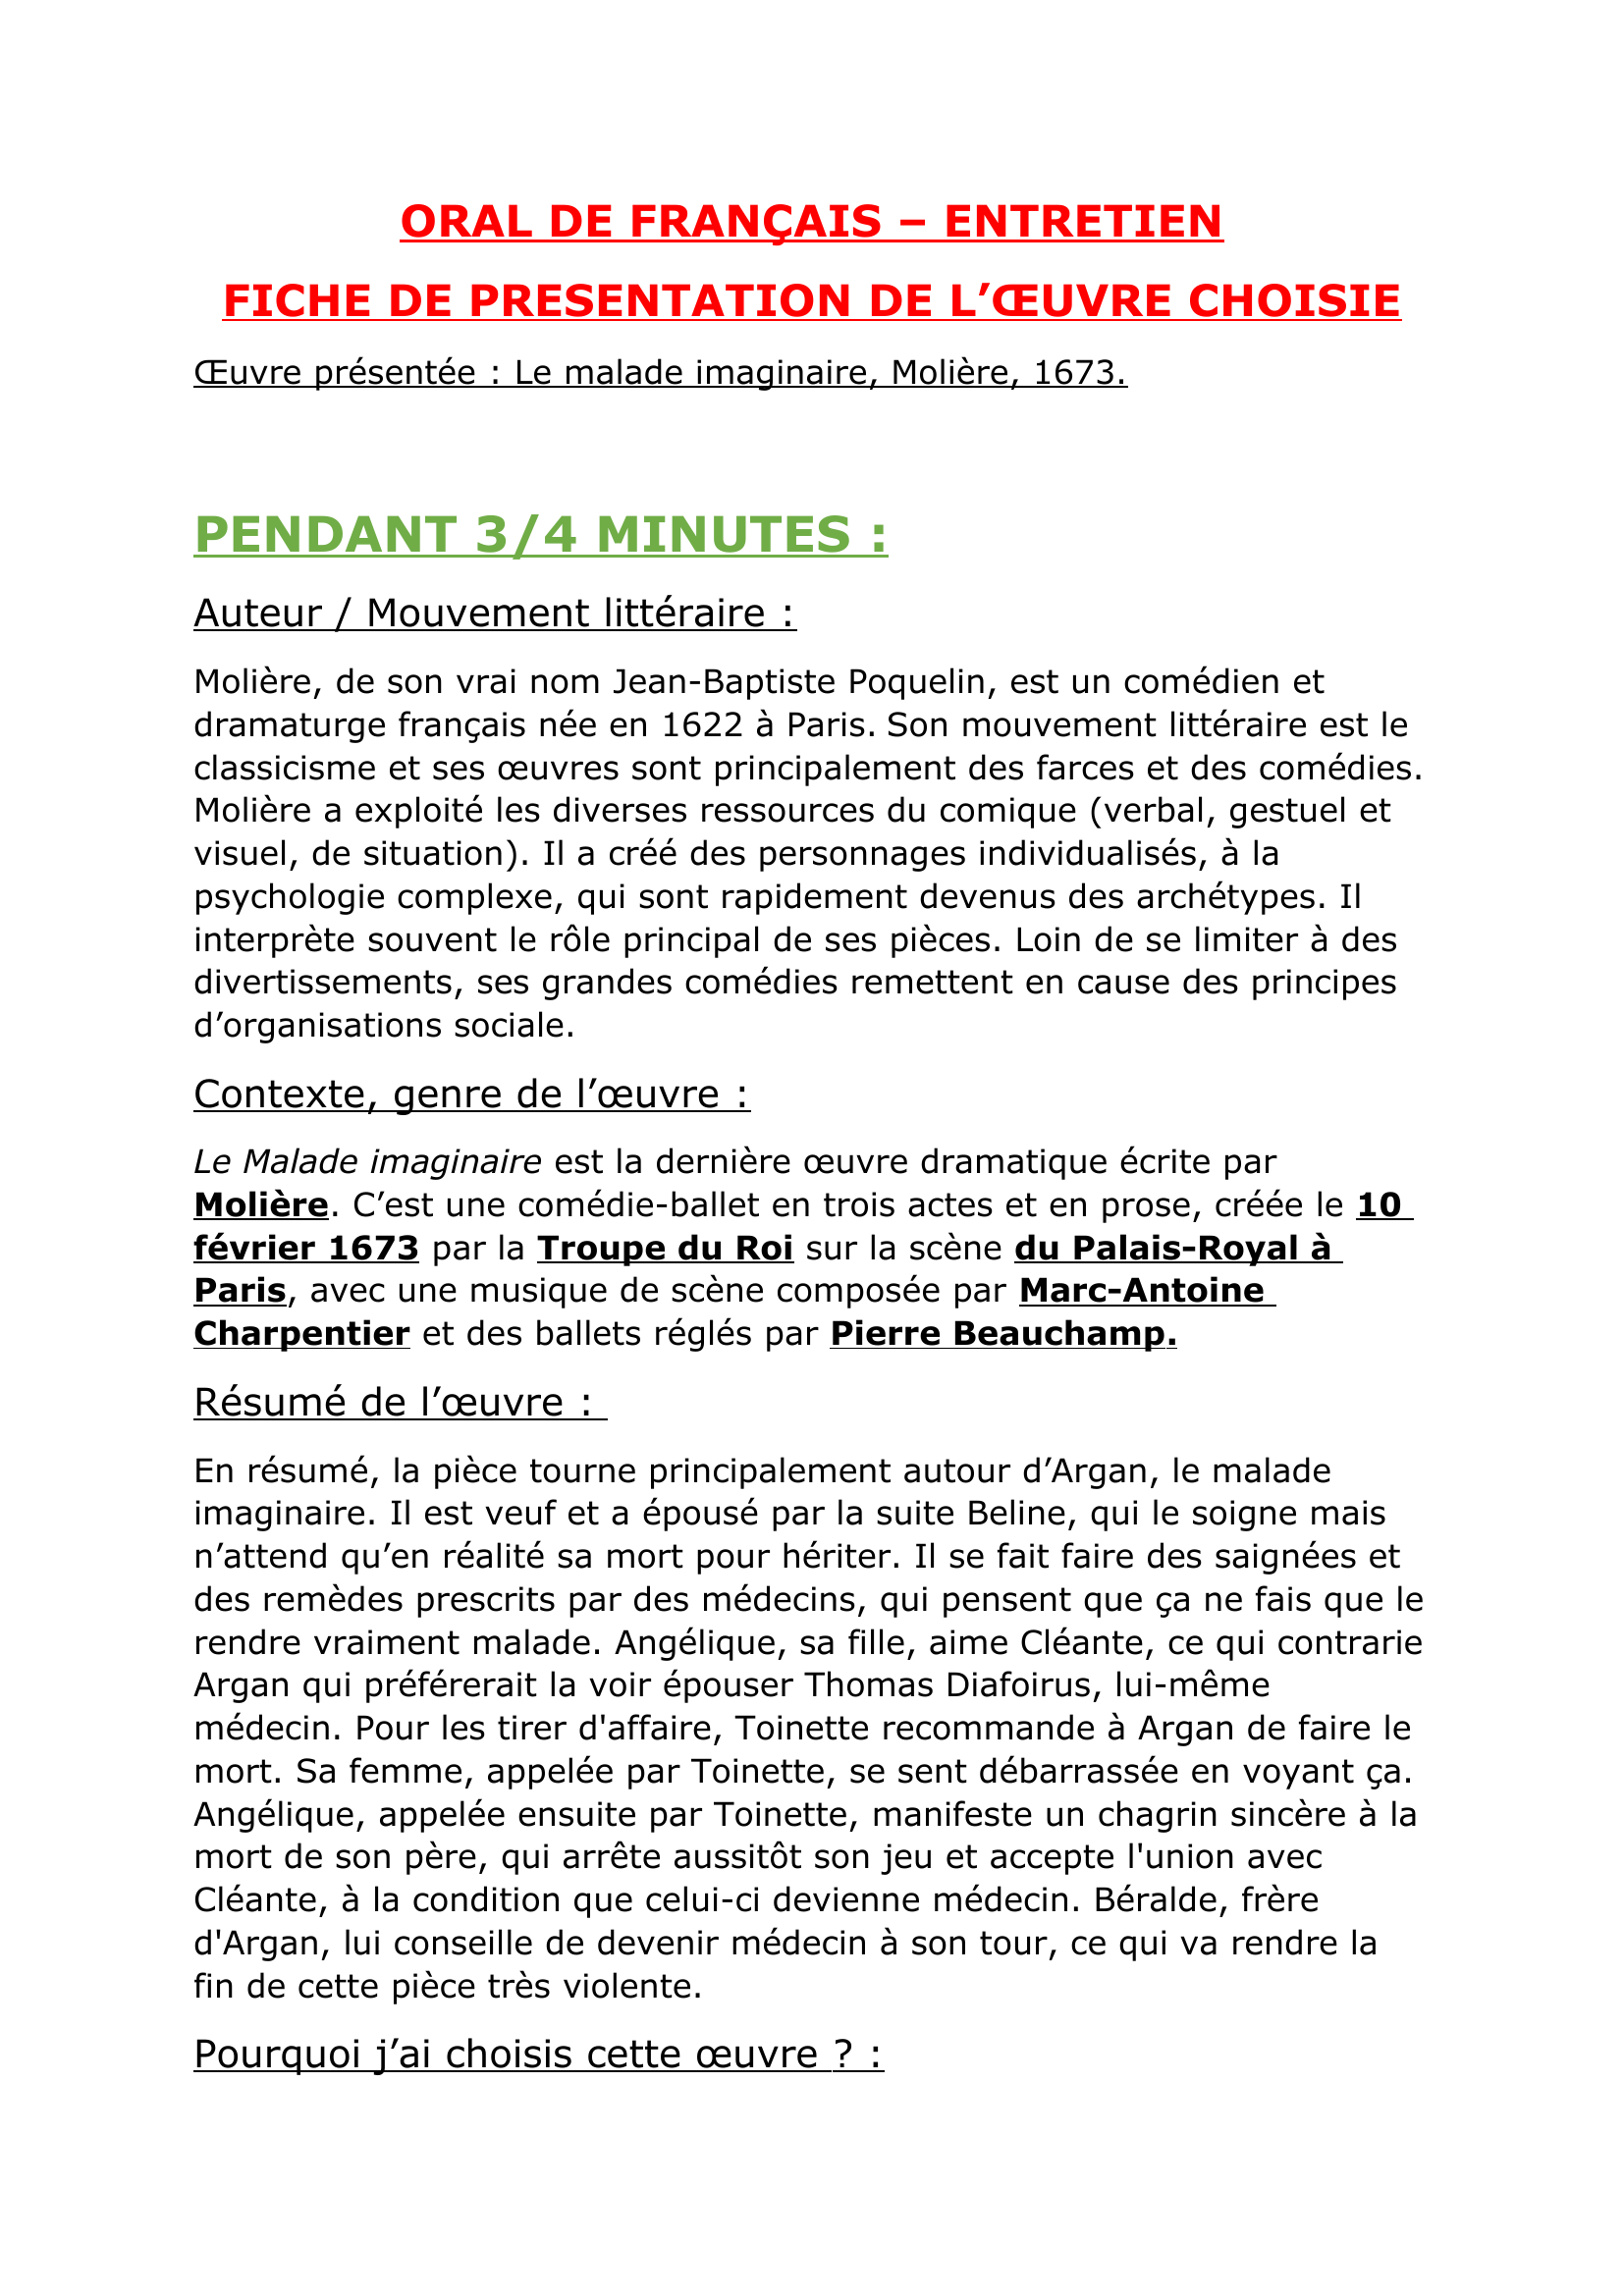 Prévisualisation du document entretien oral de français